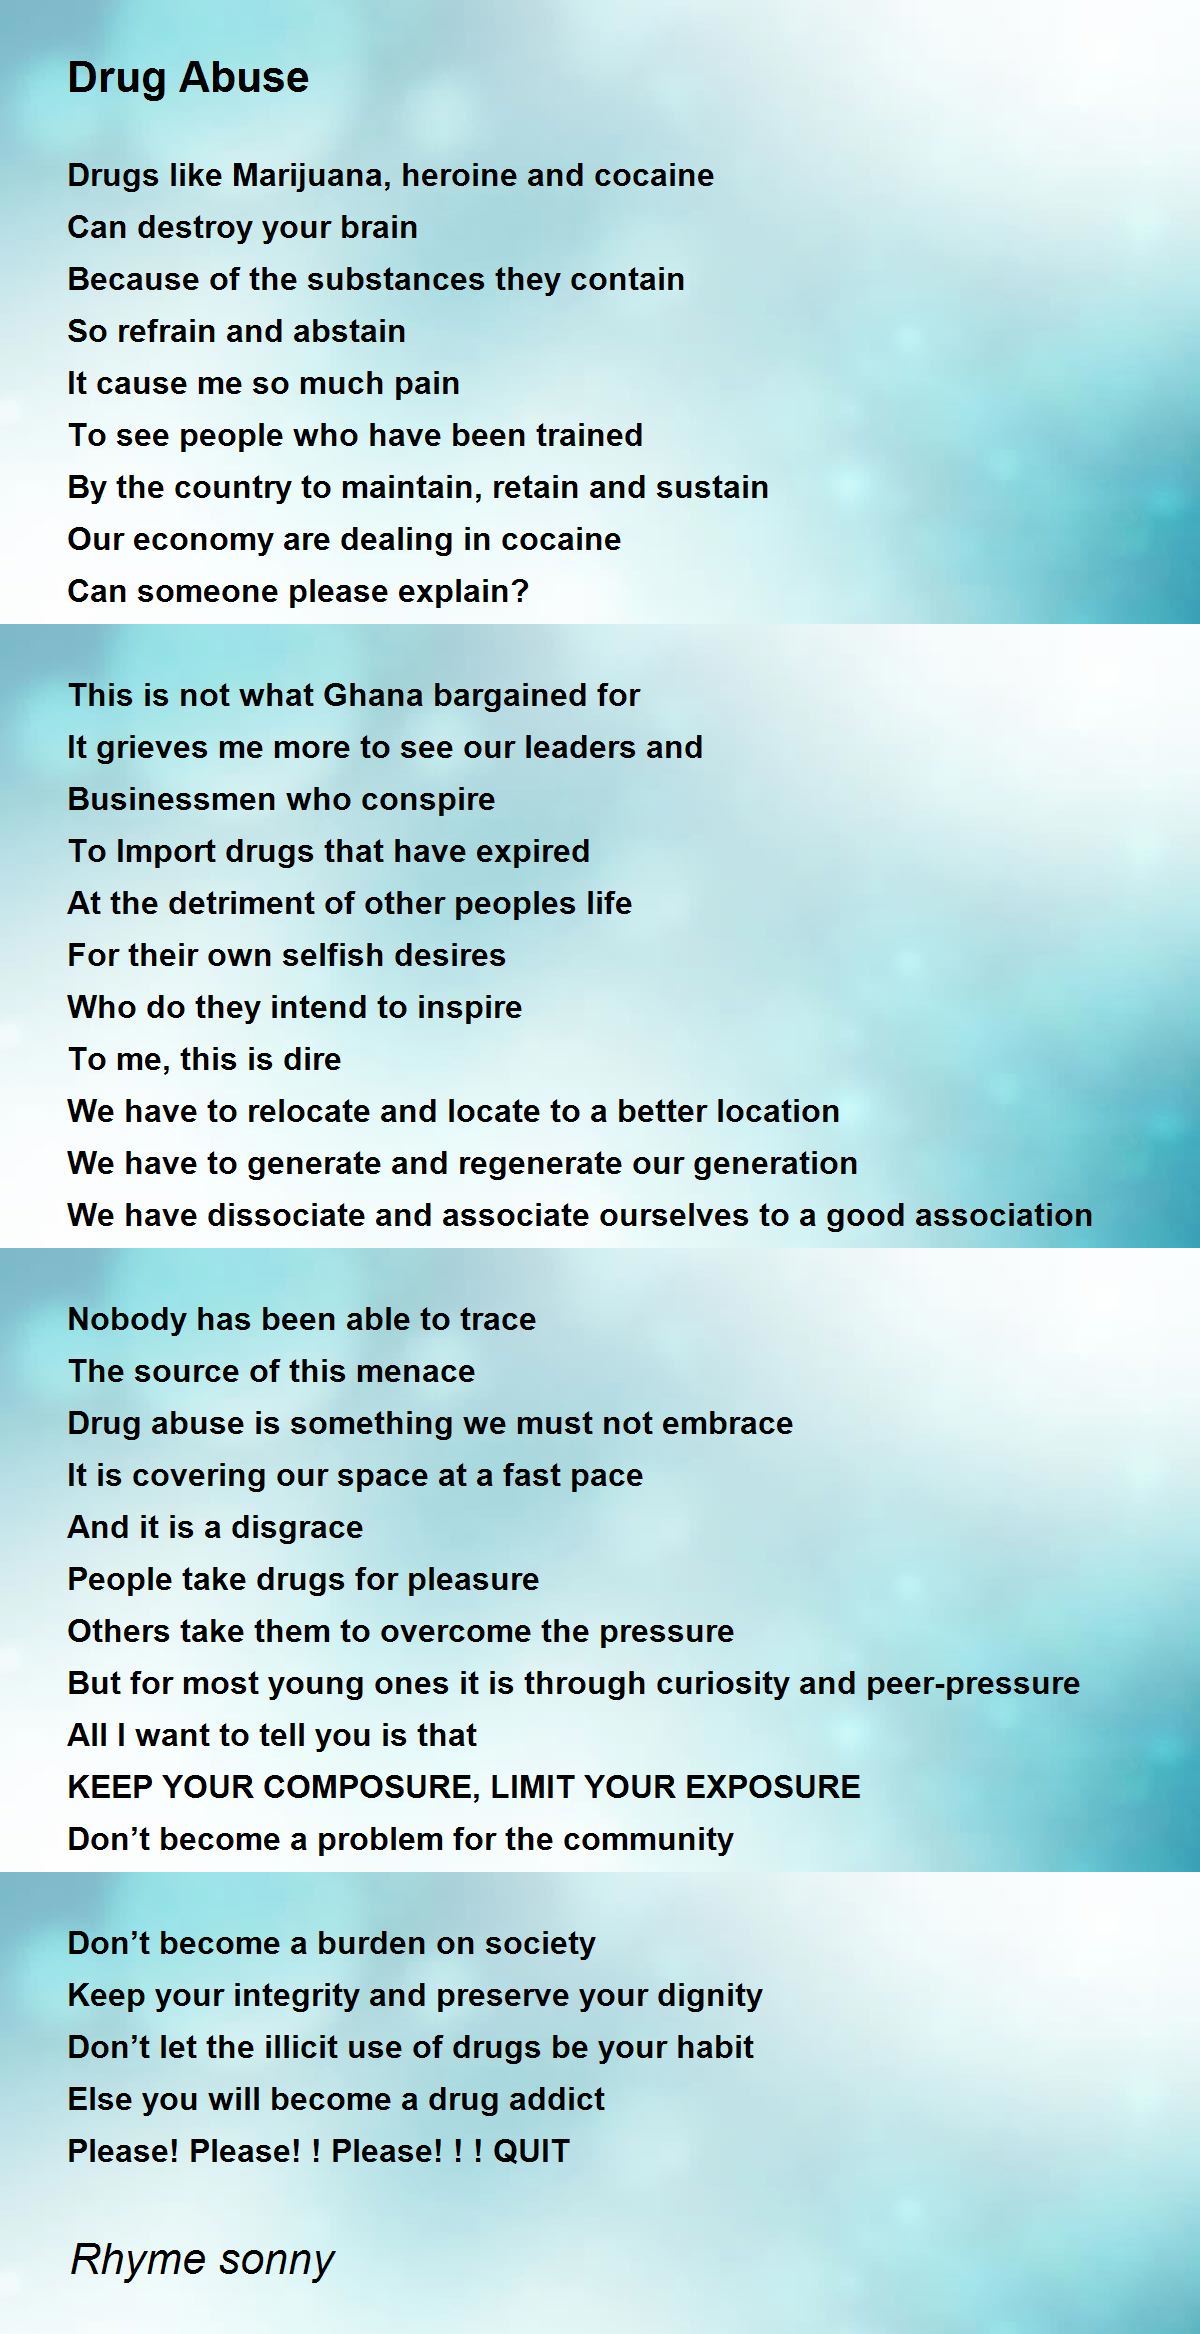 Drug Abuse - Drug Abuse Poem by Rhyme sonny